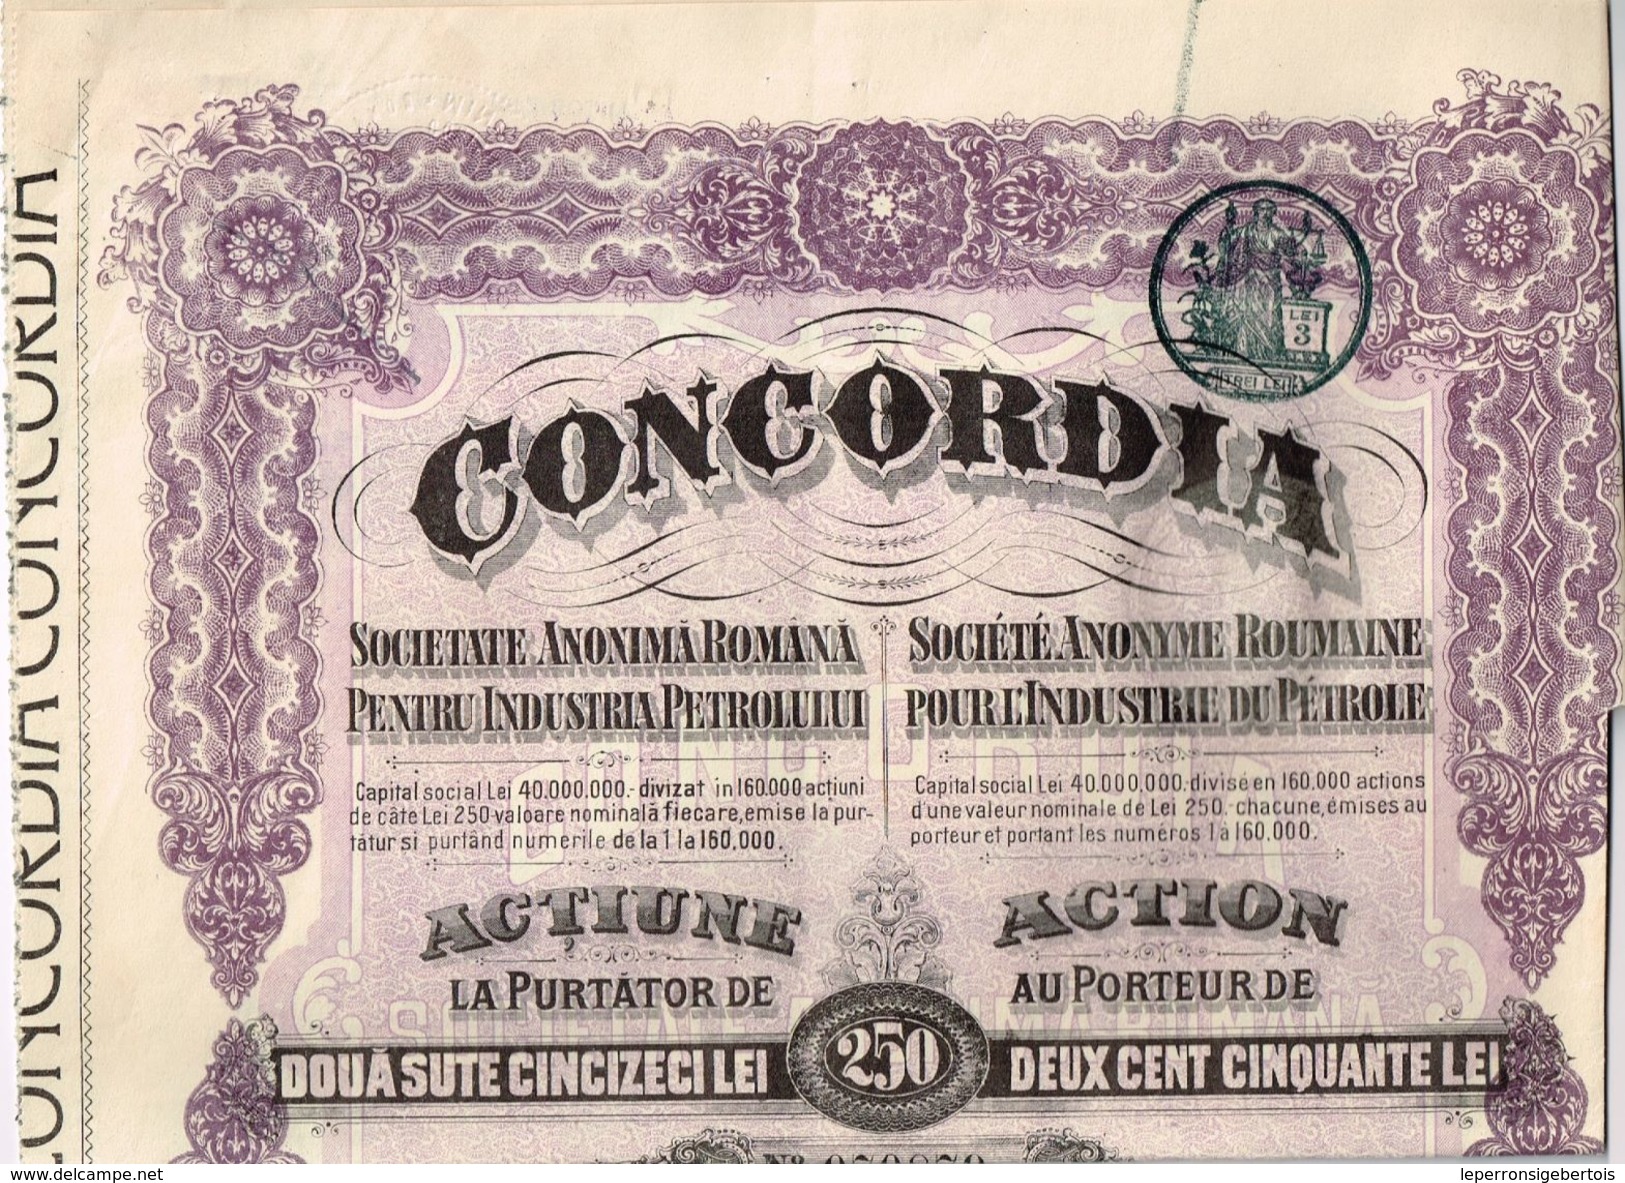 Action Ancienne -Concordia - Société Anonyme Roumaine Pour L'Industrie Du Pétrole - Titre De 1920 - Aardolie